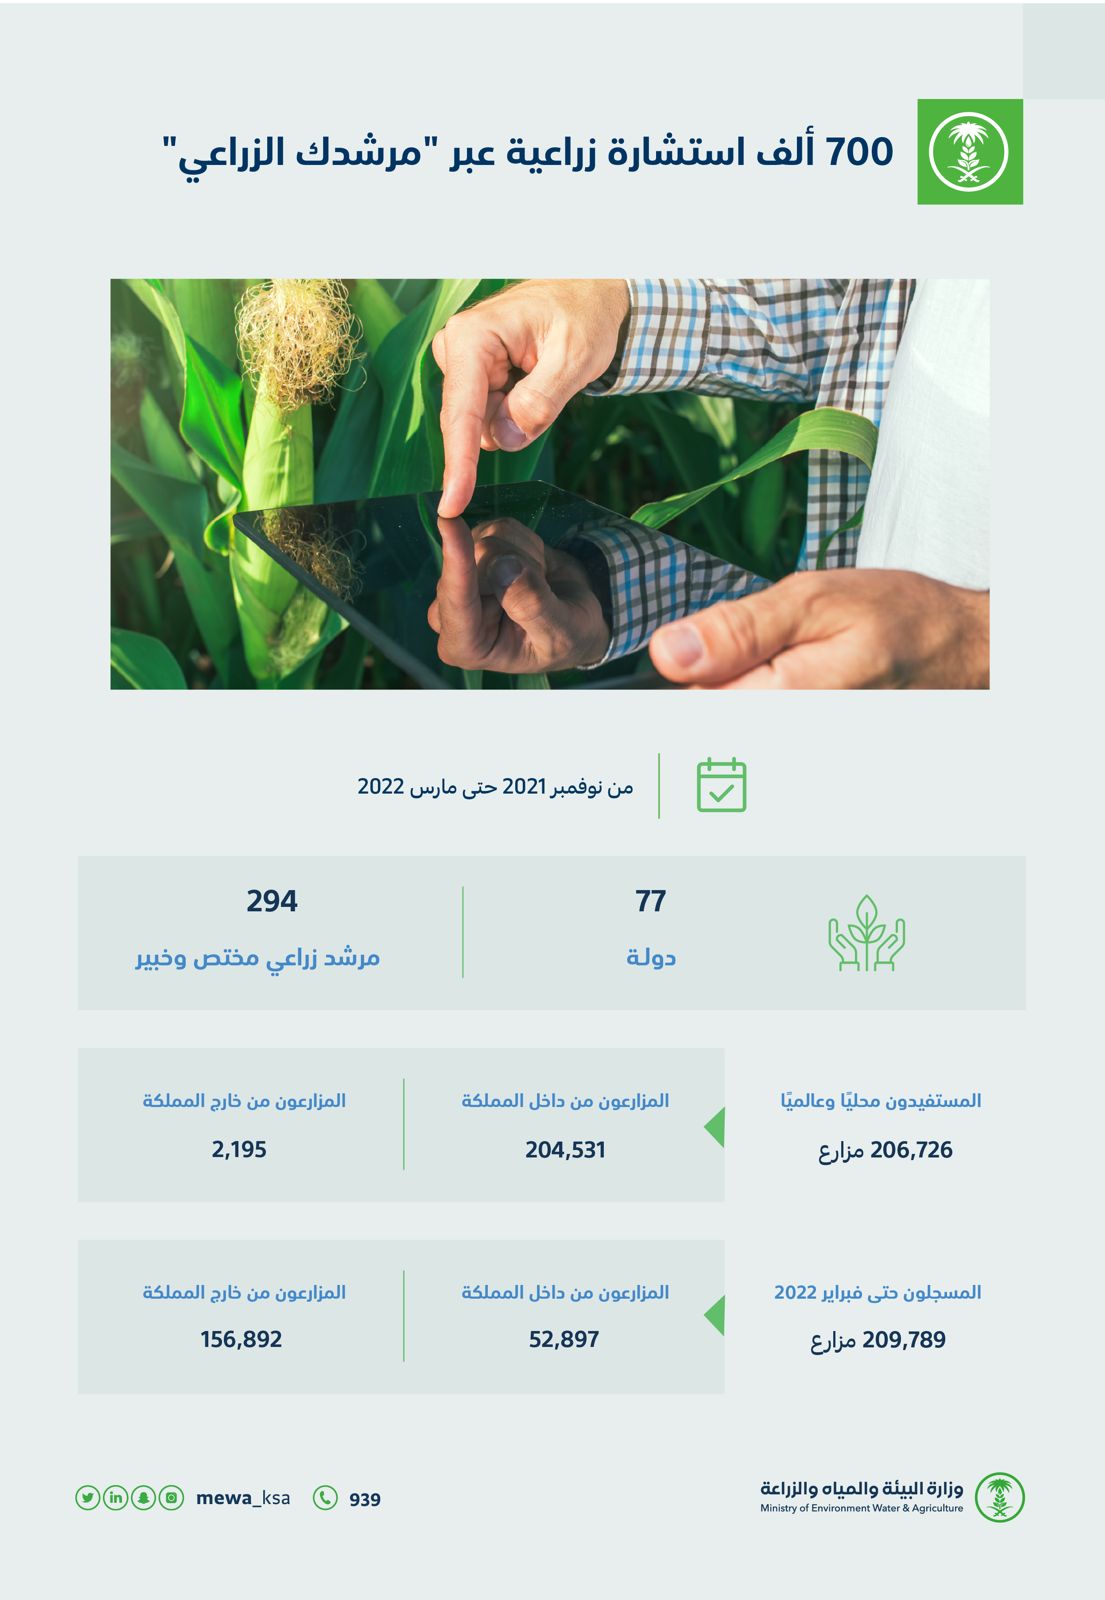 700 ألف استشارة زراعية عبر “مرشدك الزراعي” خلال 5 أشهر